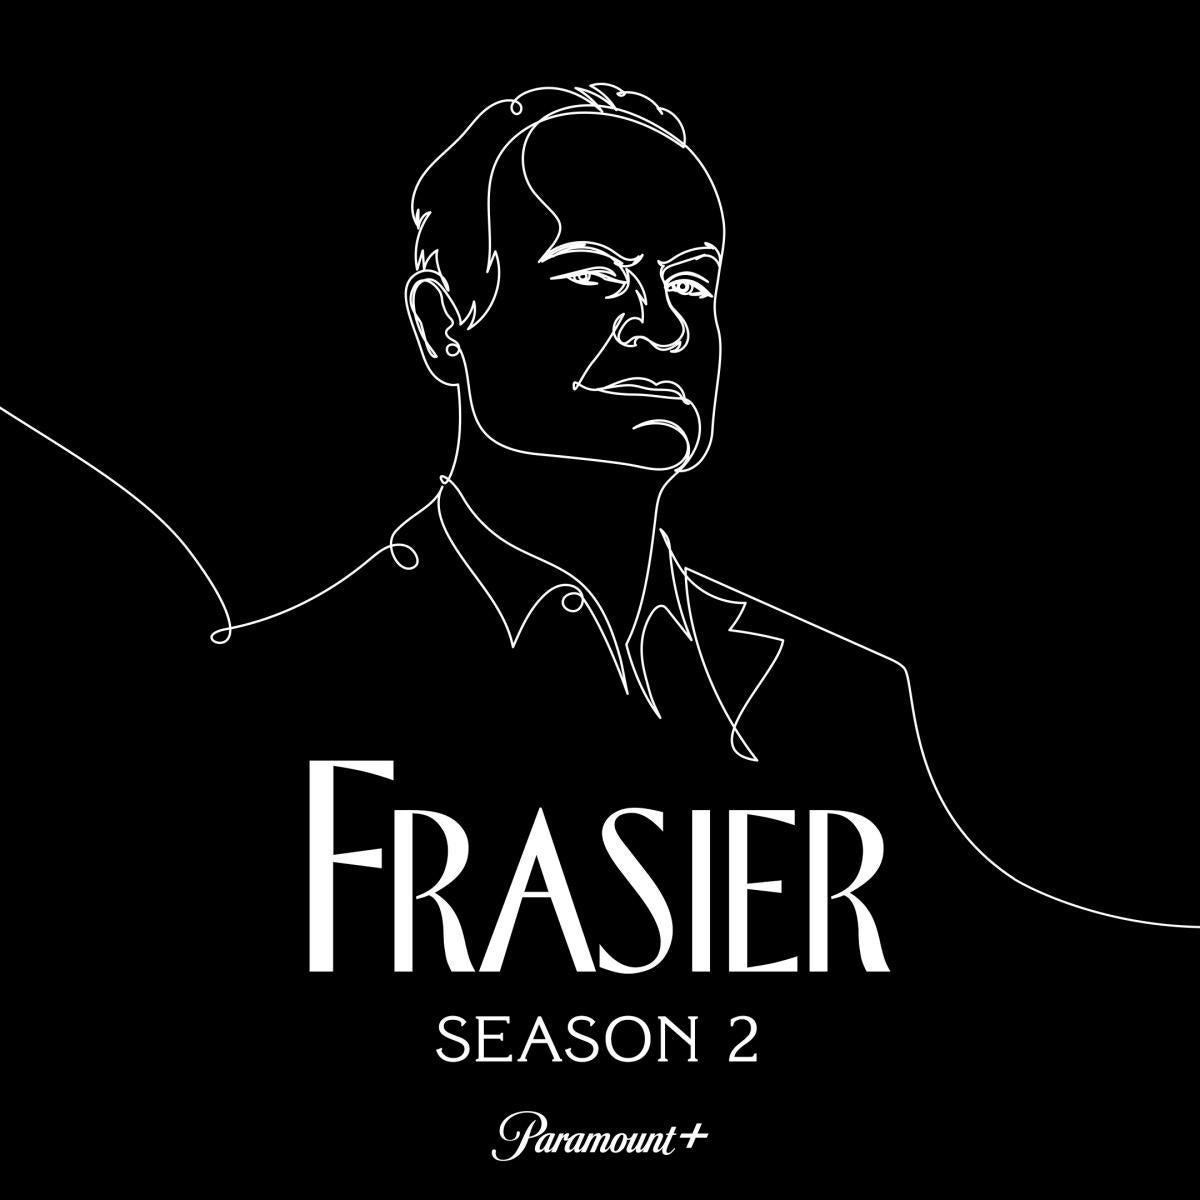 frasier-season-2-announcement.jpg